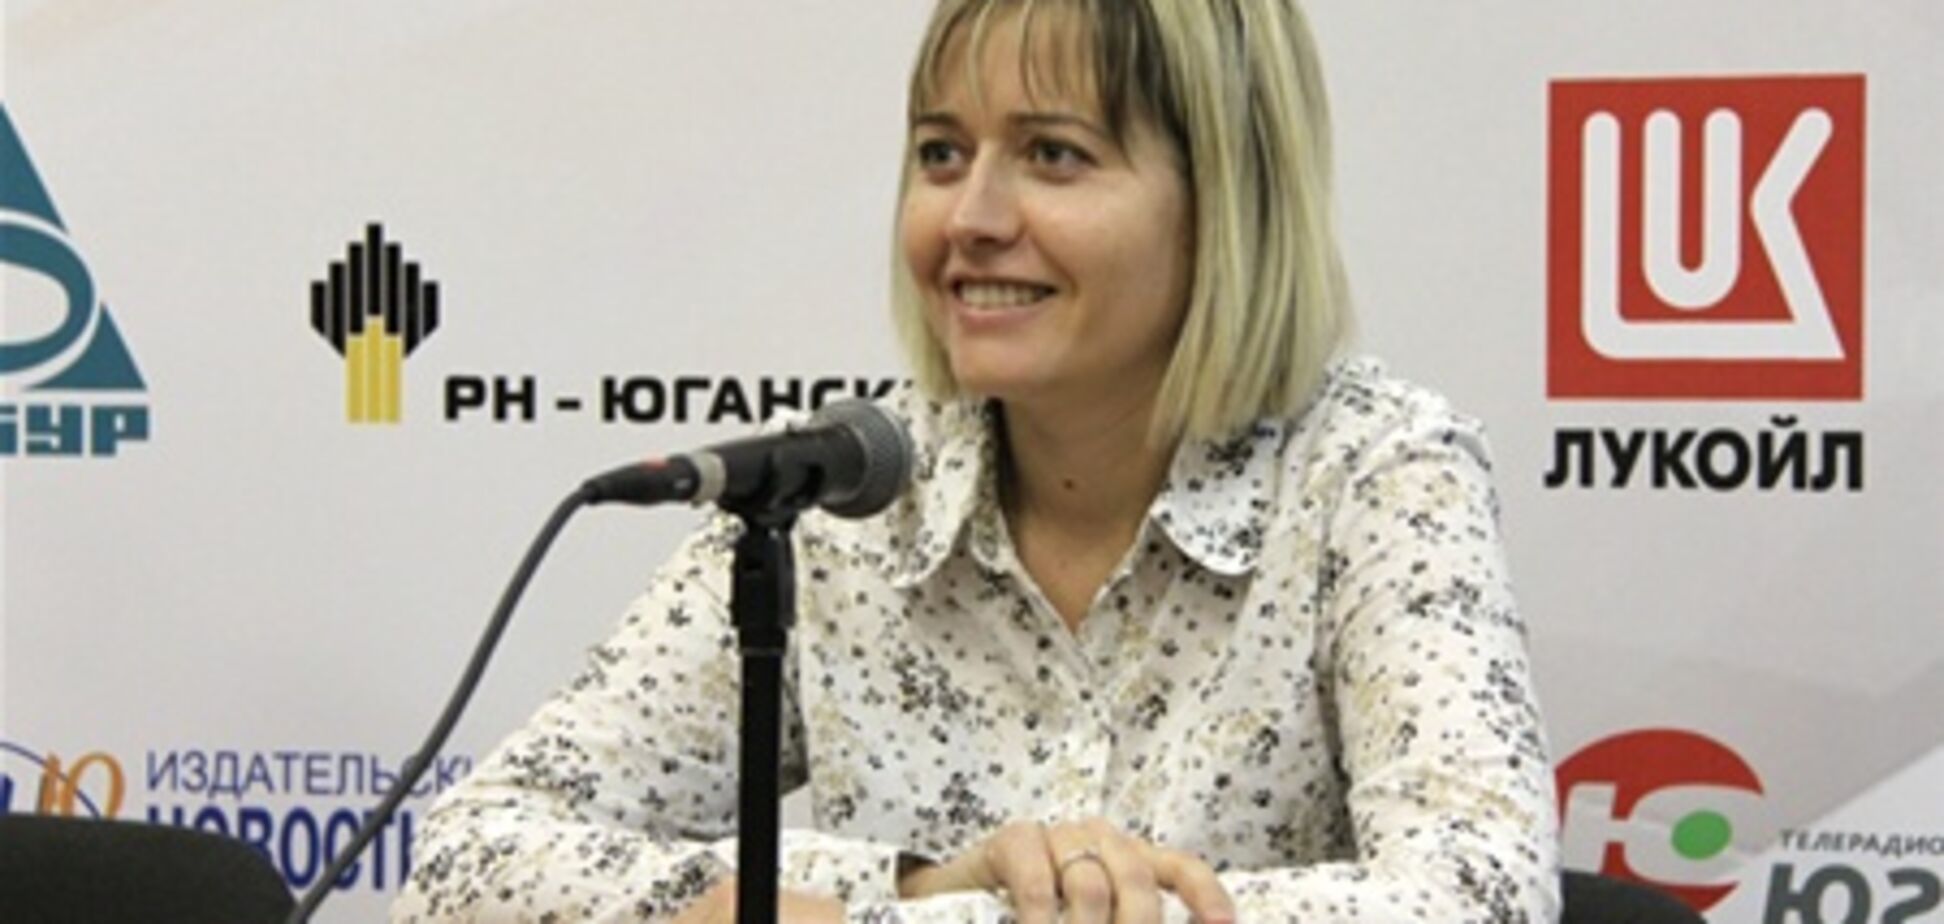 Гроссмейстер Жукова поделилась впечатлениями о чемпионате мира по шахматам